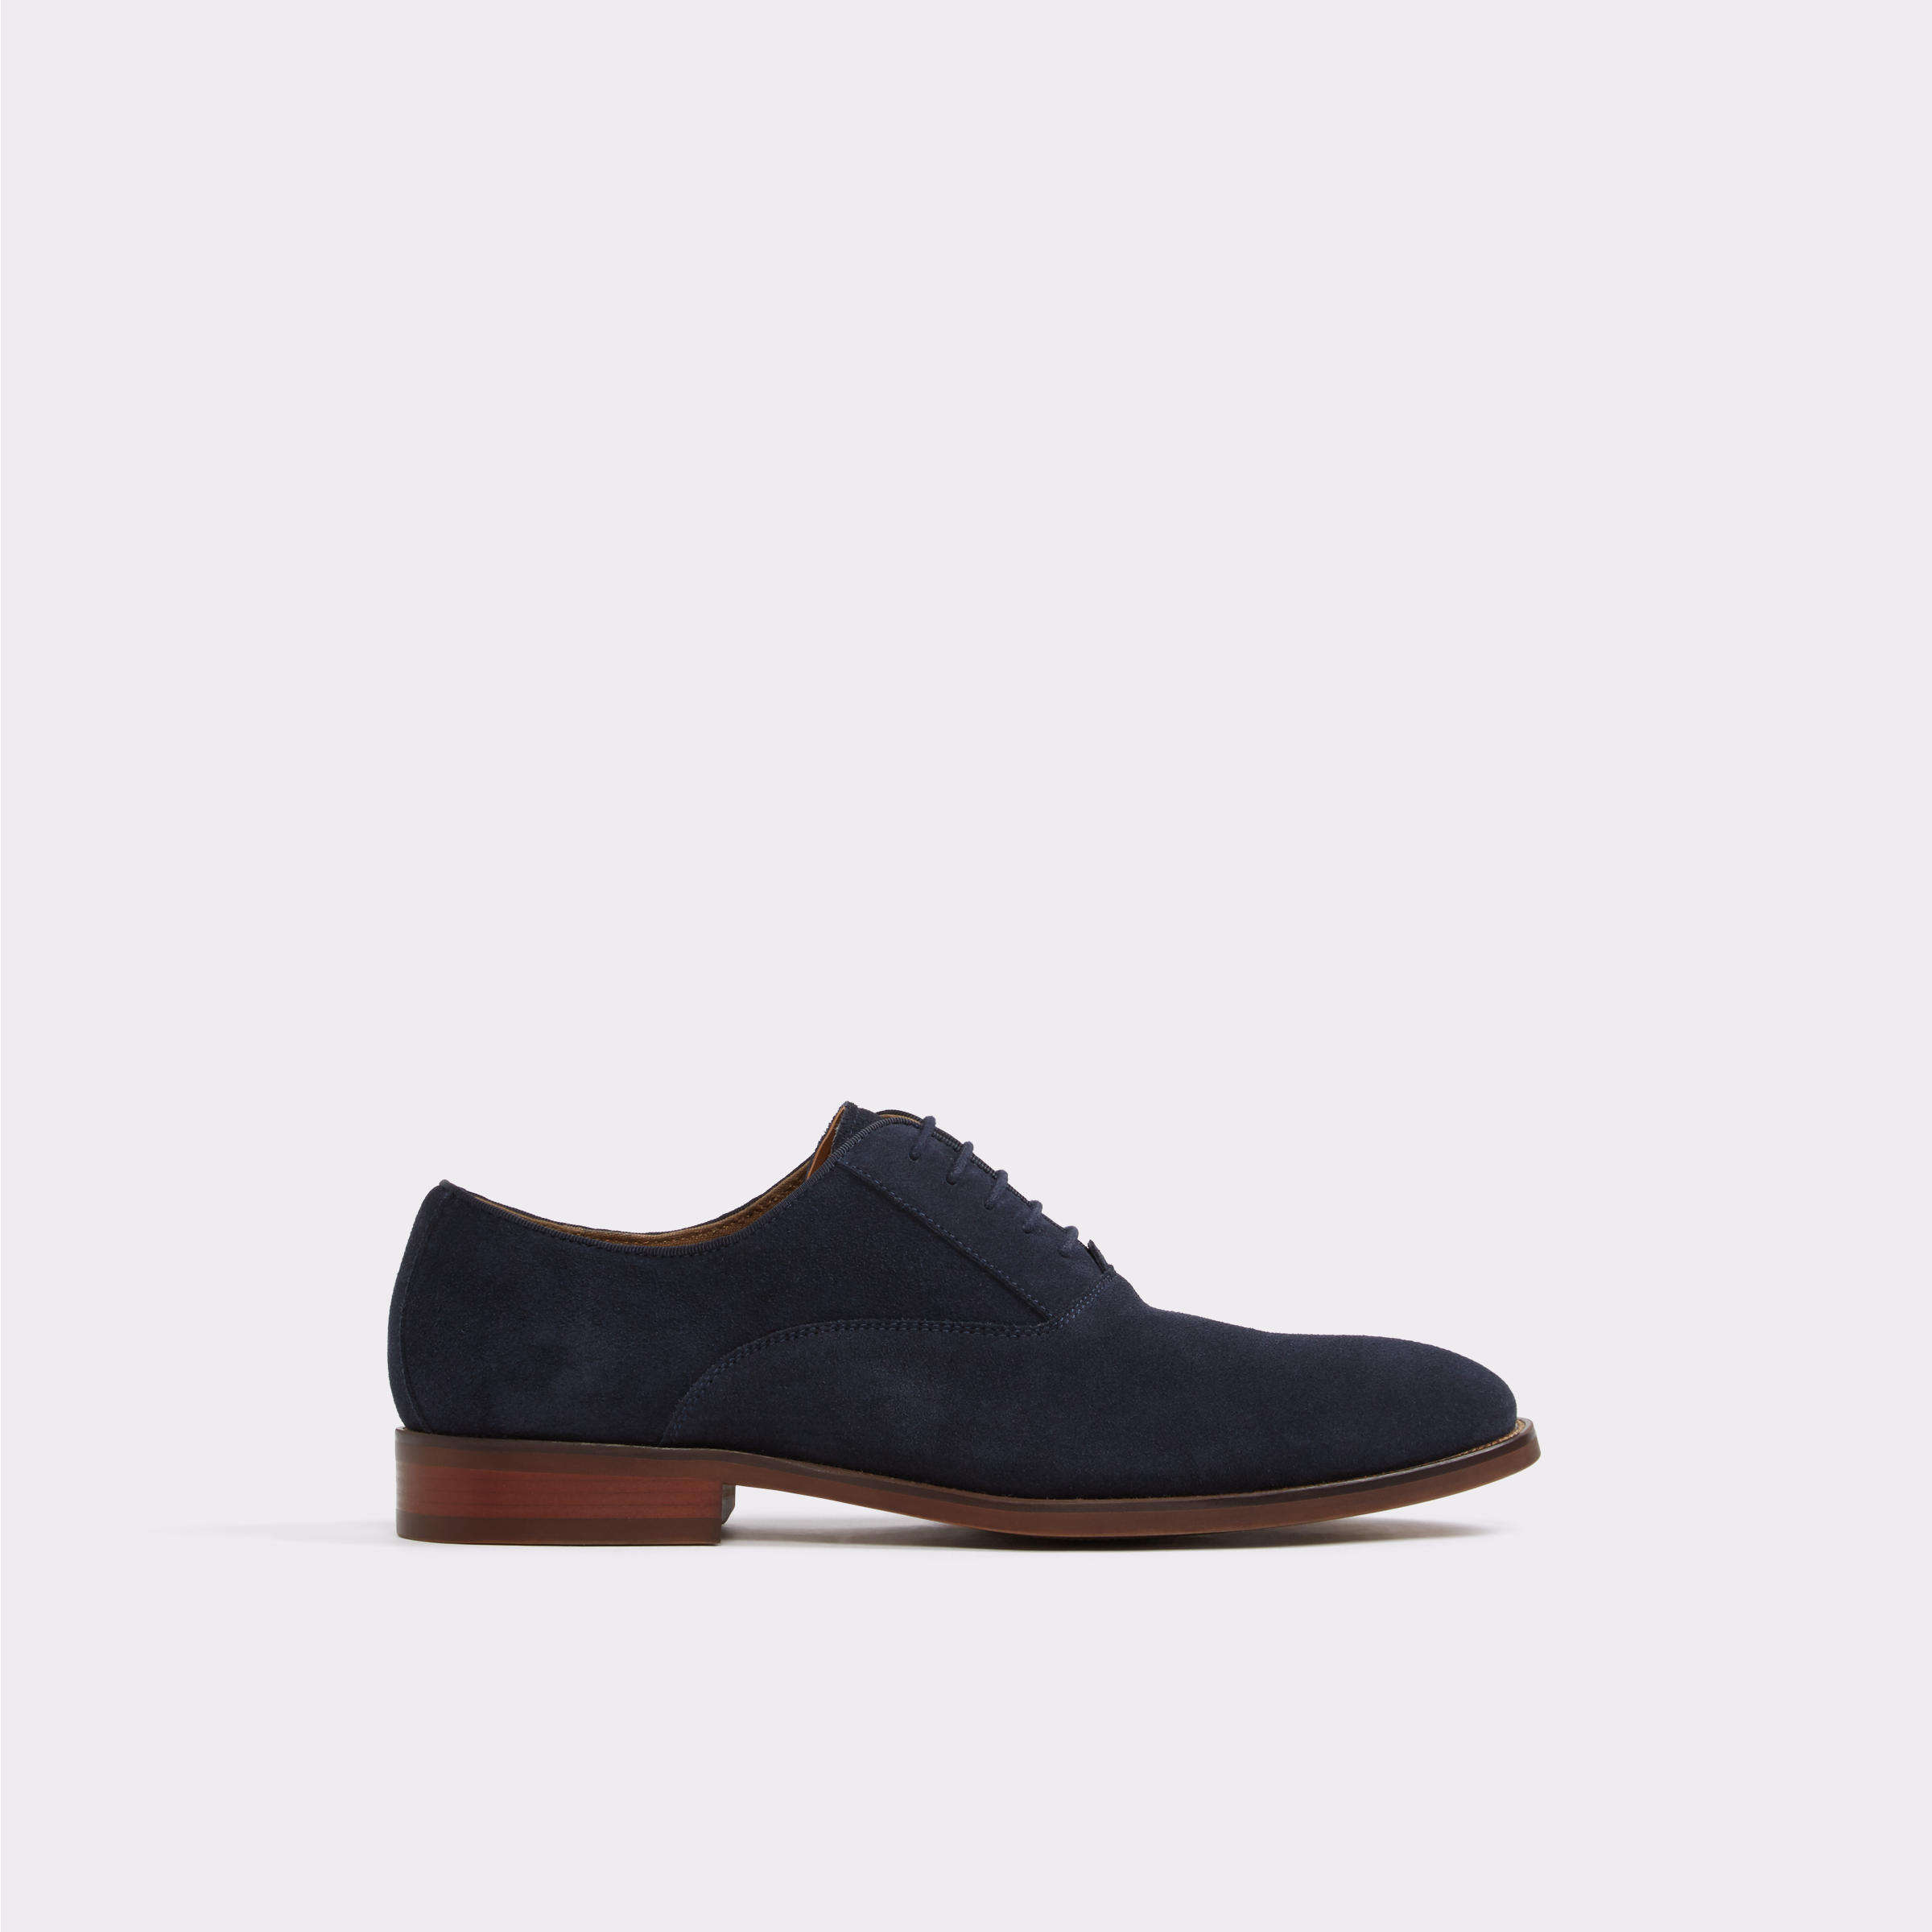 Pantofi eleganti bleumarin, pentru barbati, ALDO - Eloie1, din piele naturala